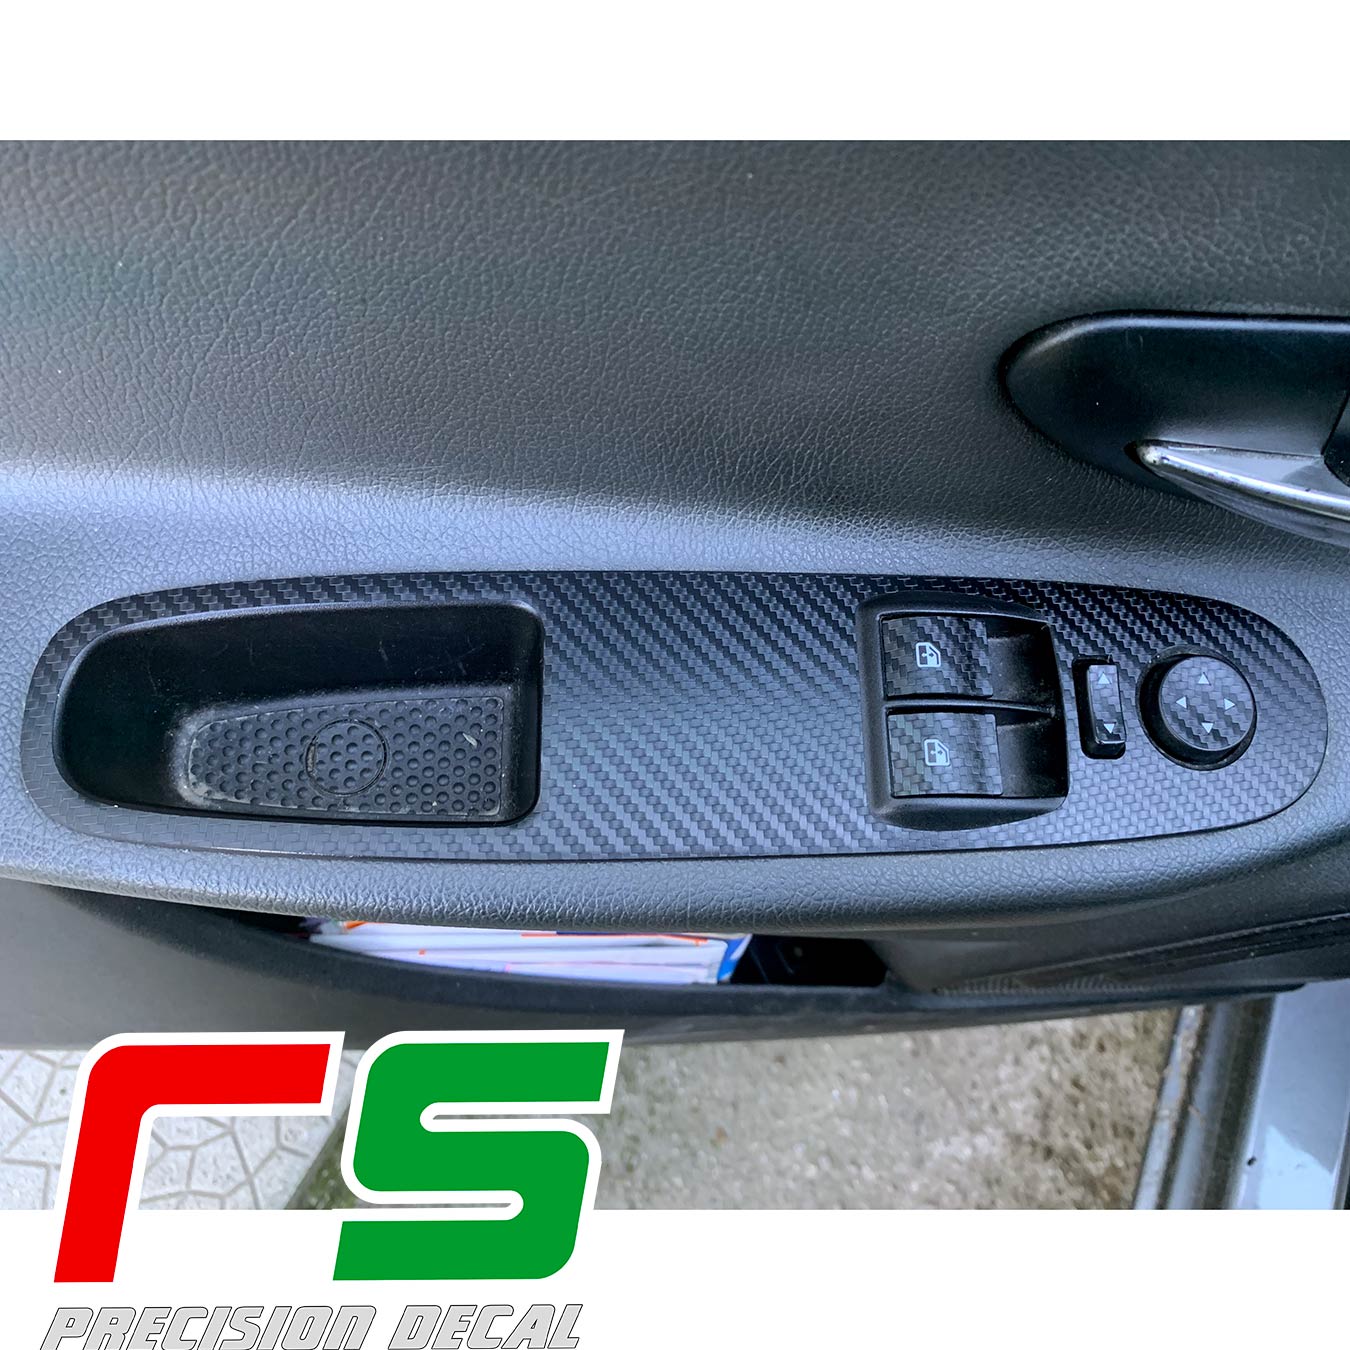 Fiat Punto Evo stickers Decal carbonlook tuning window regulators